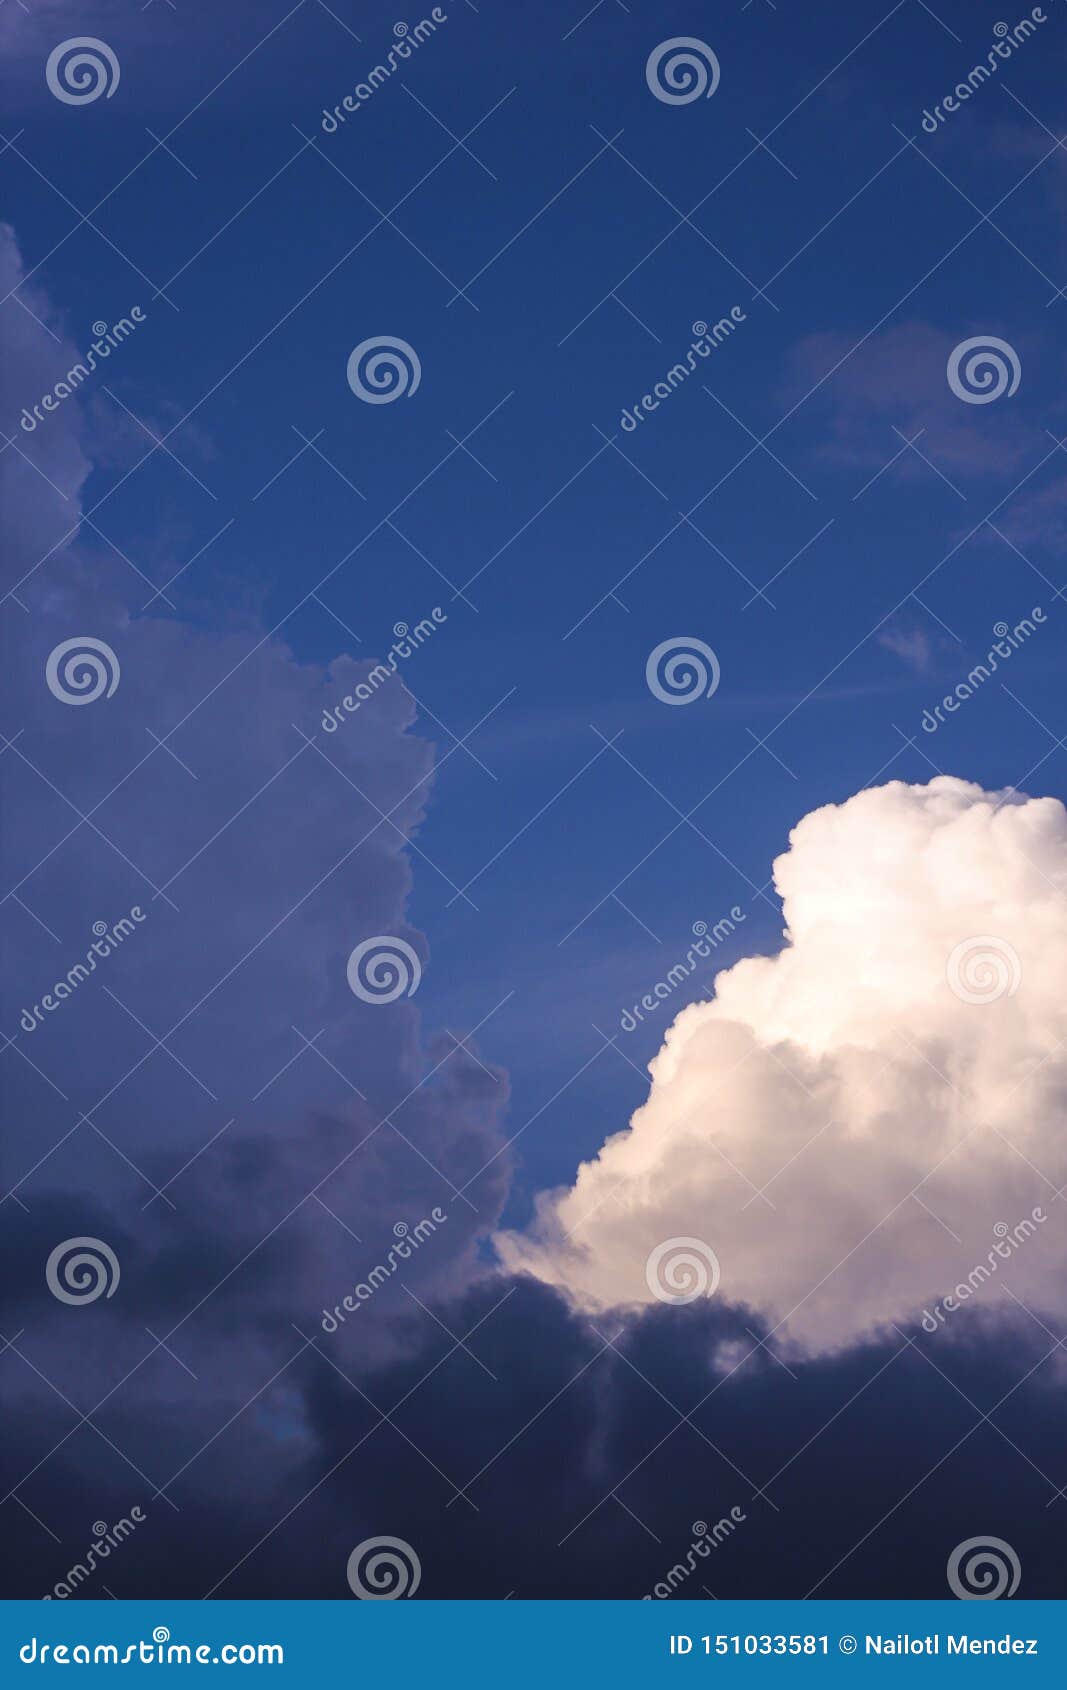 clouds in blue sky cumulos